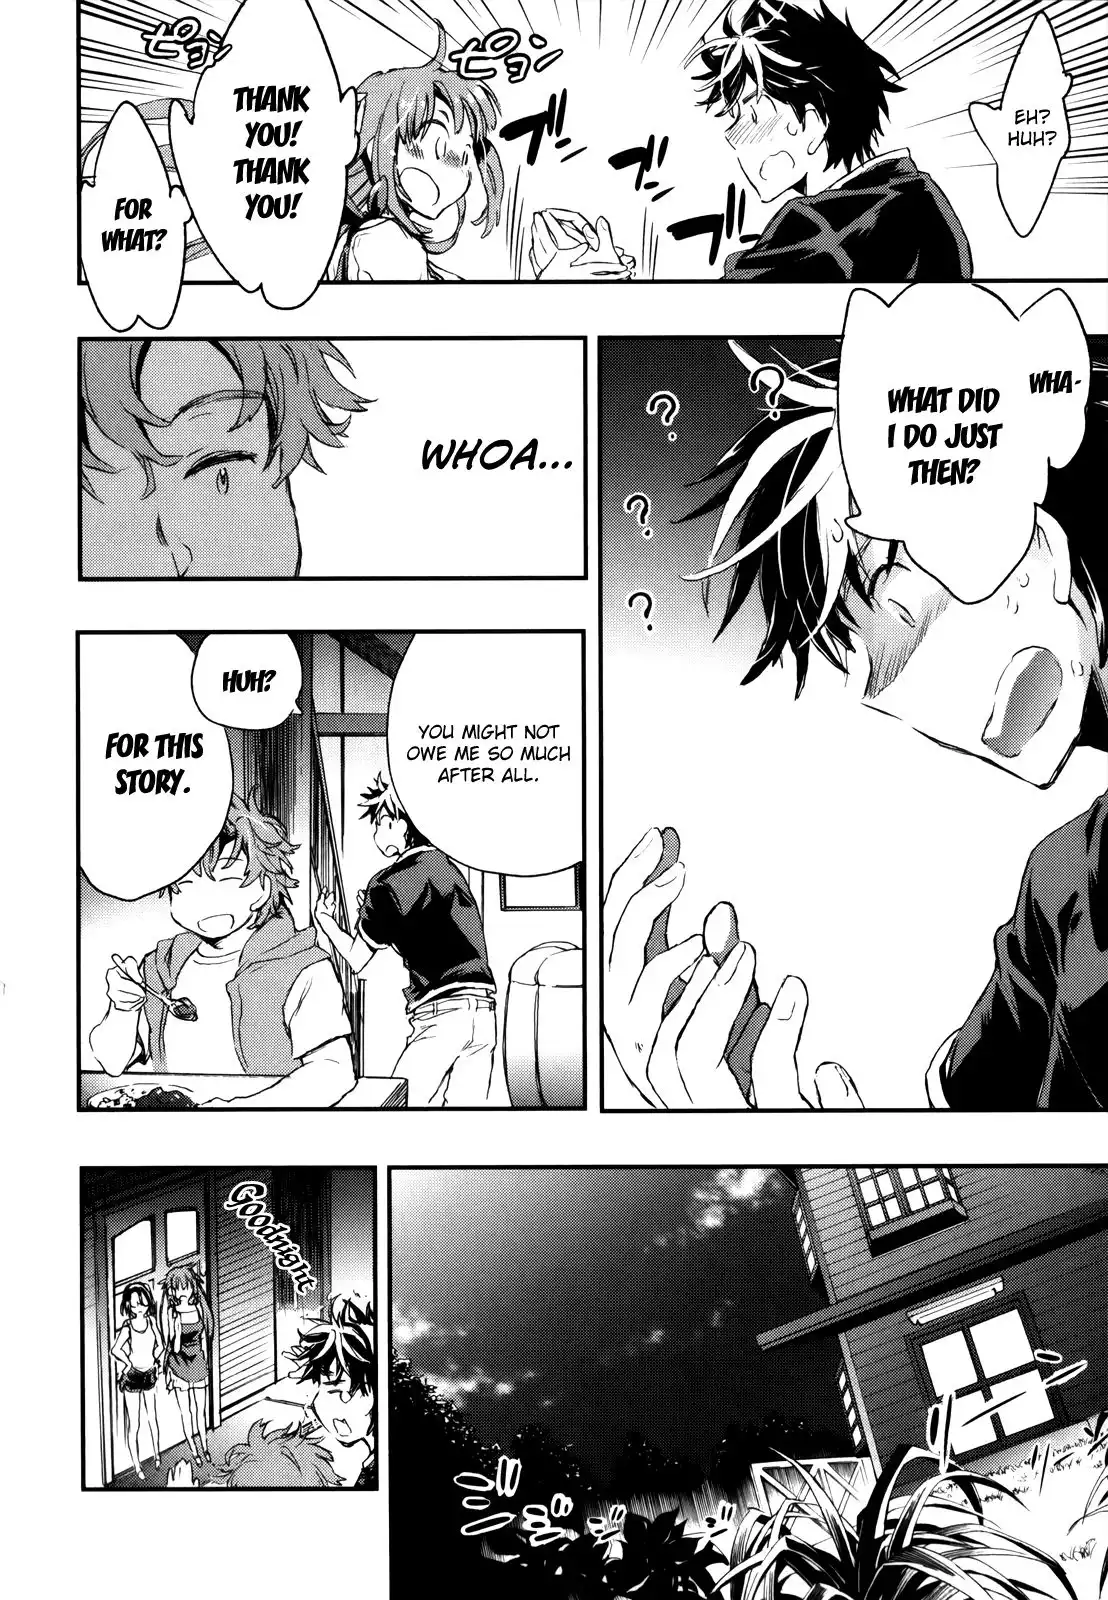 Onna no Ko ga H na Manga Egaicha Dame desu ka? Chapter 7